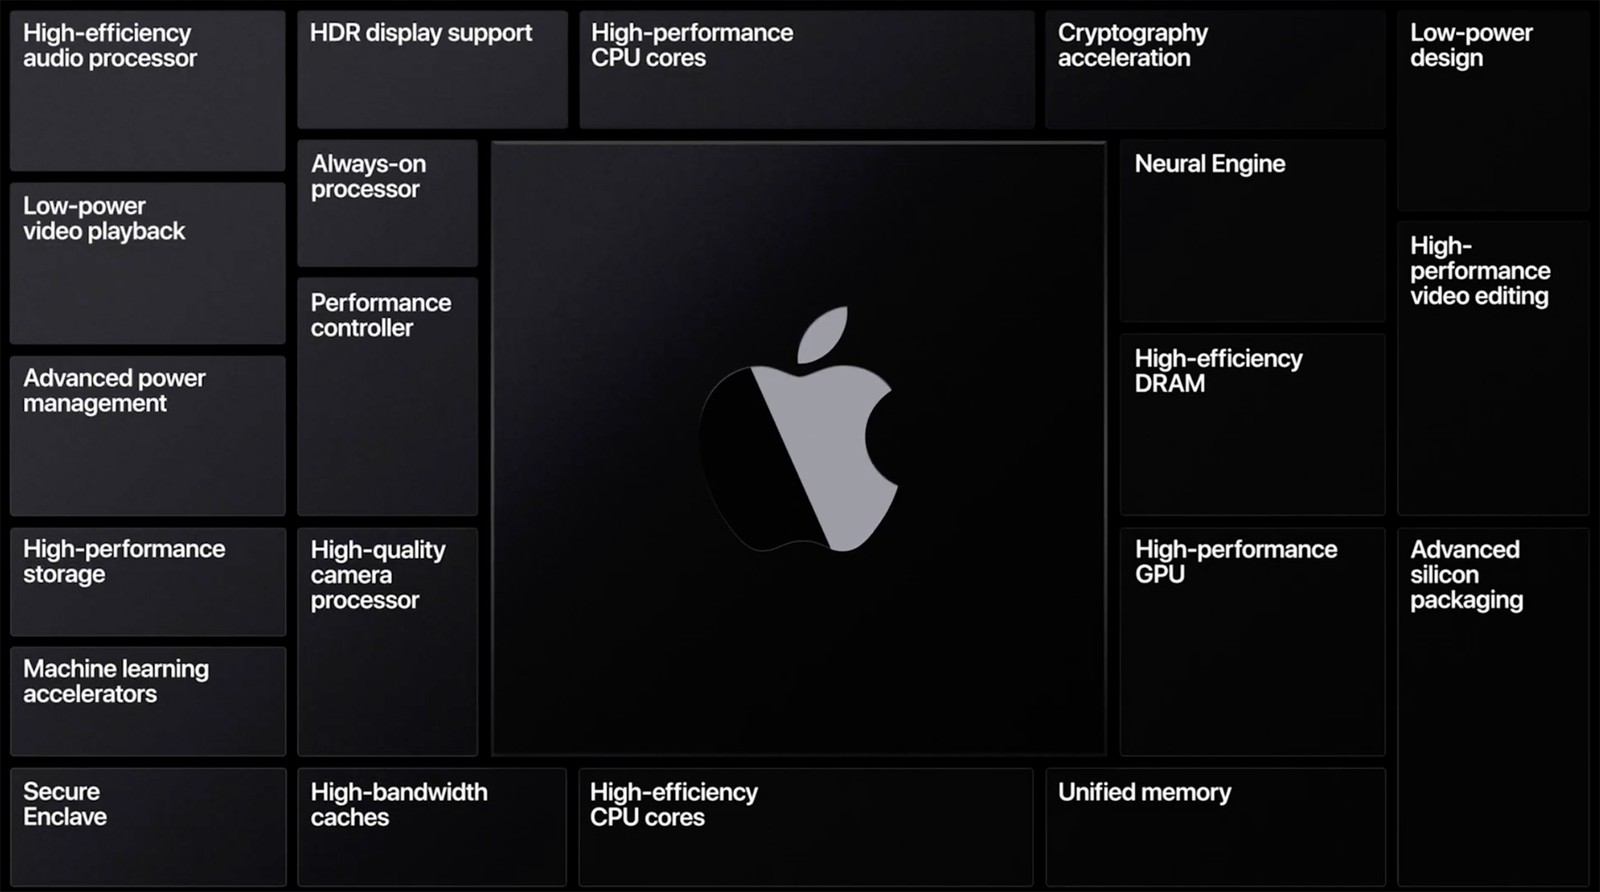 下周將發布三款蘋果晶片 MacBook！性能和電池航續大爆發